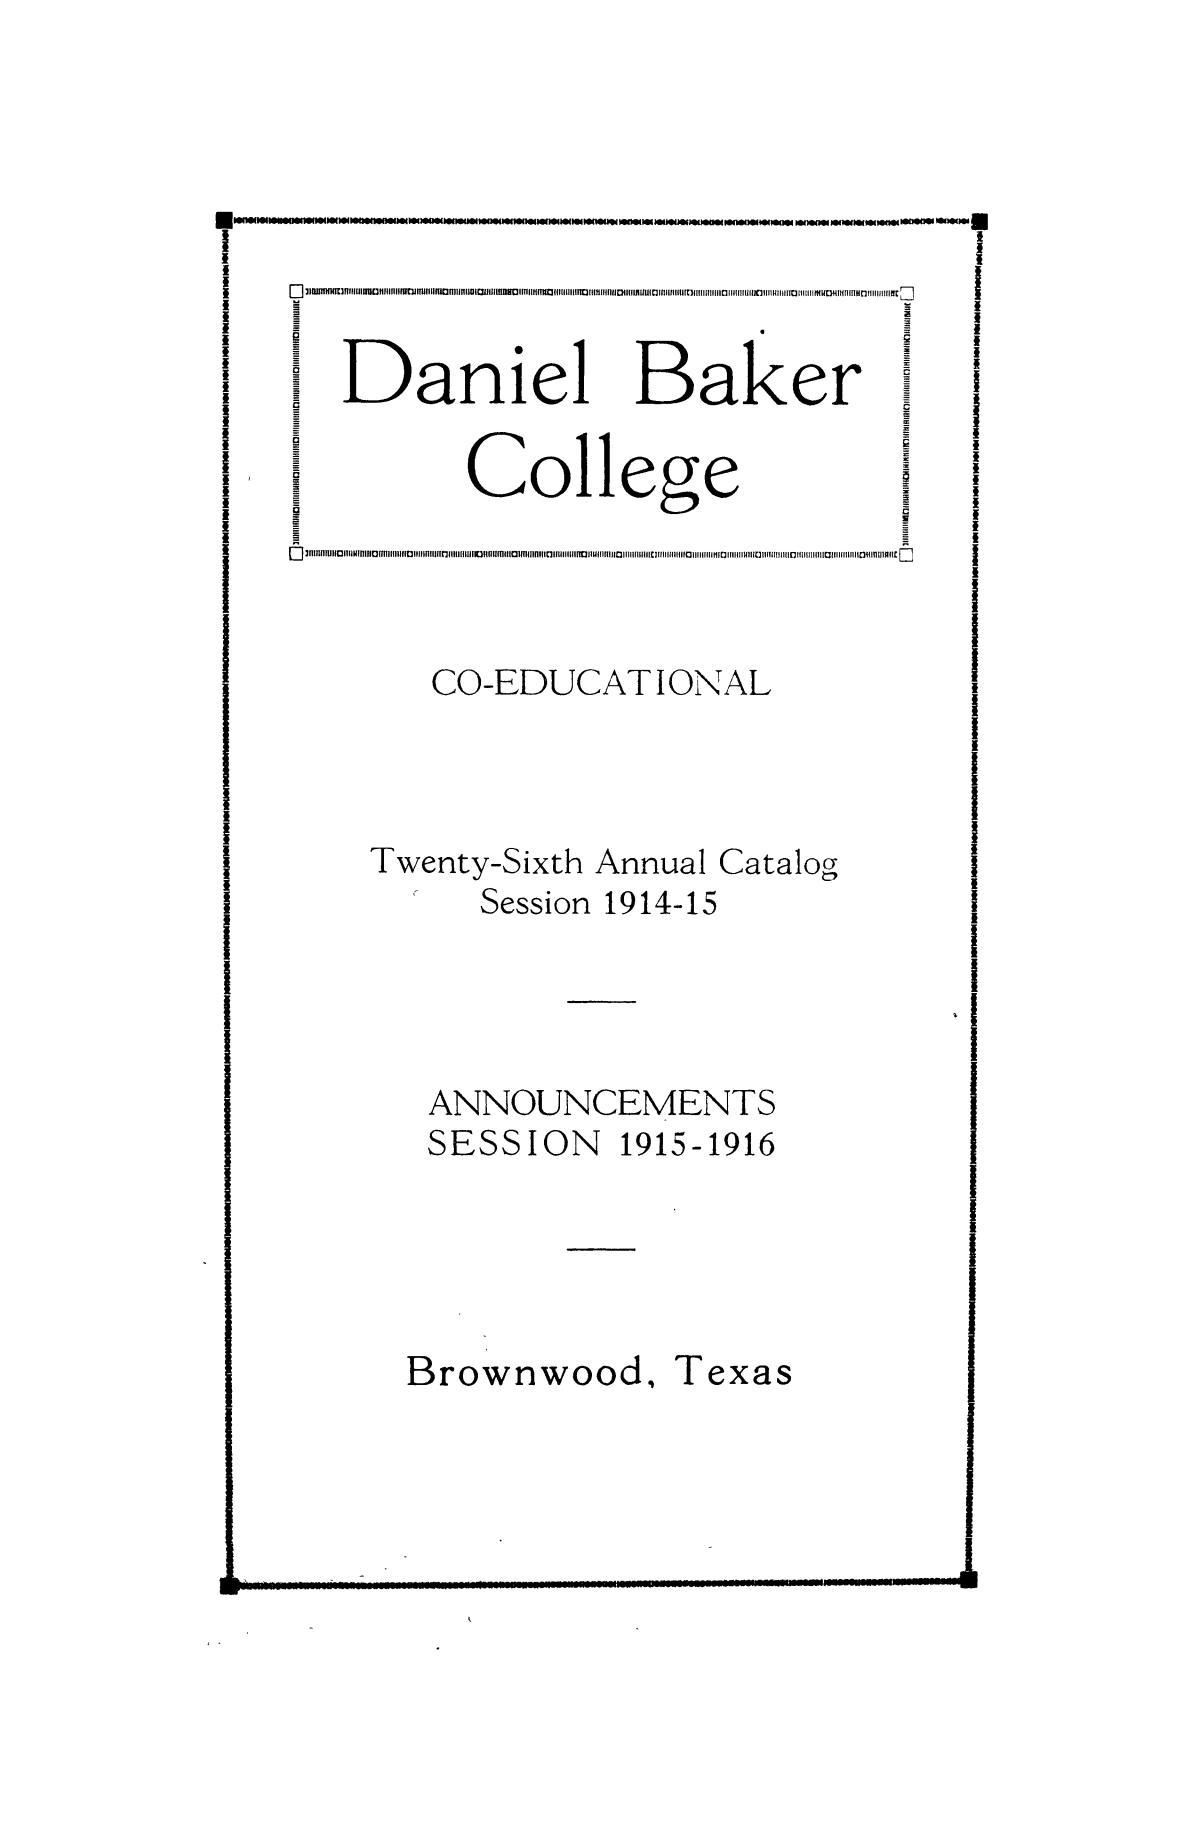 Catalog of Daniel Baker College, 1914-1915
                                                
                                                    1
                                                